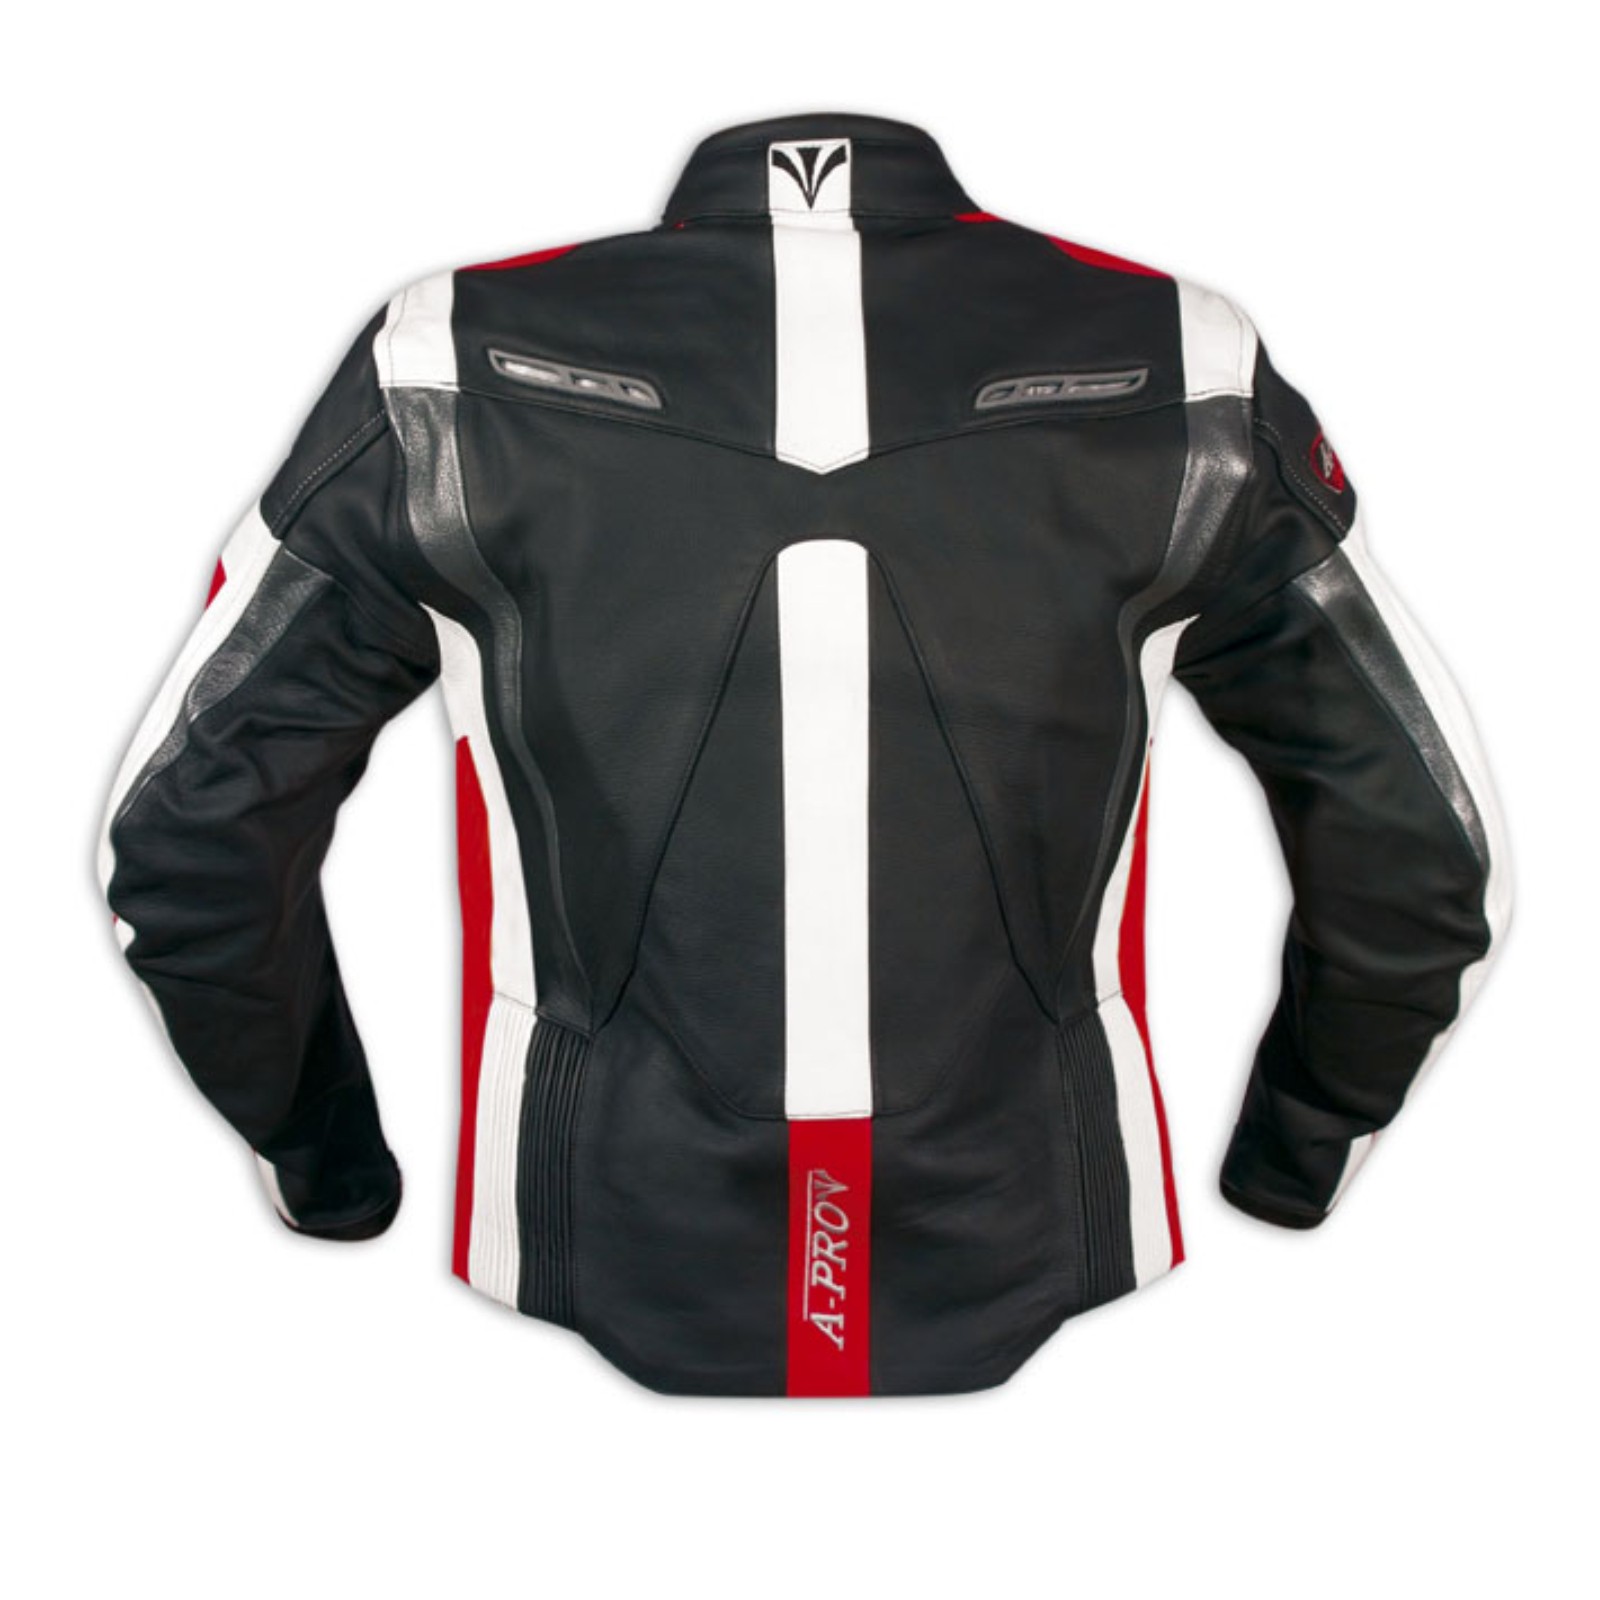 Abbigliamento Moto e Accessori - Moto Giacca Pelle Motociclismo